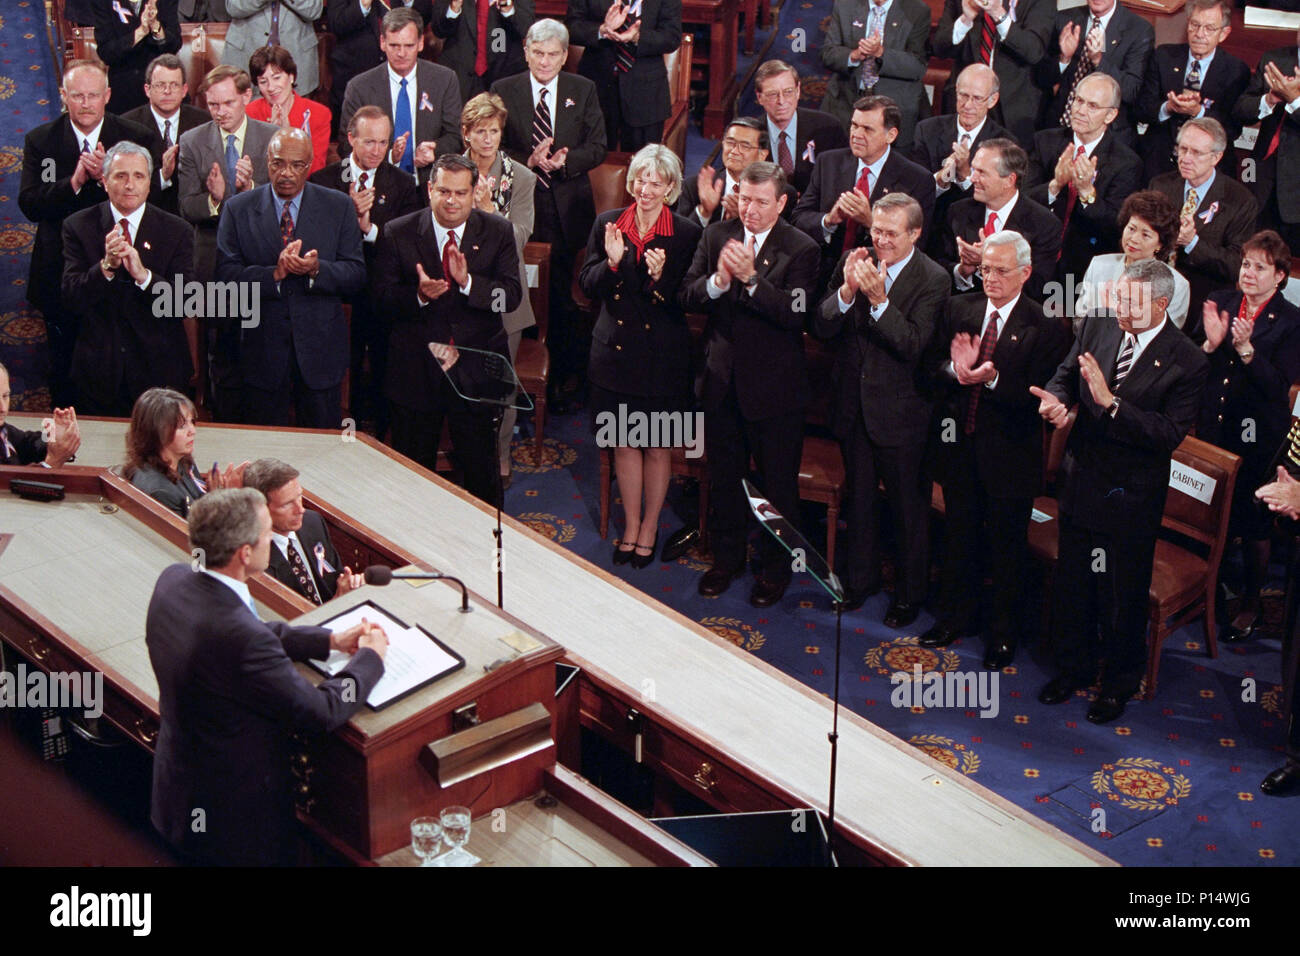 Präsident George W. Bush bietet eine Adresse im Hinblick auf die Terroranschläge des 11. September auf die Vereinigten Staaten zu einer gemeinsamen Sitzung des Kongresses Donnerstag, Sept. 20, 2001, U.S. Capitol. Stockfoto